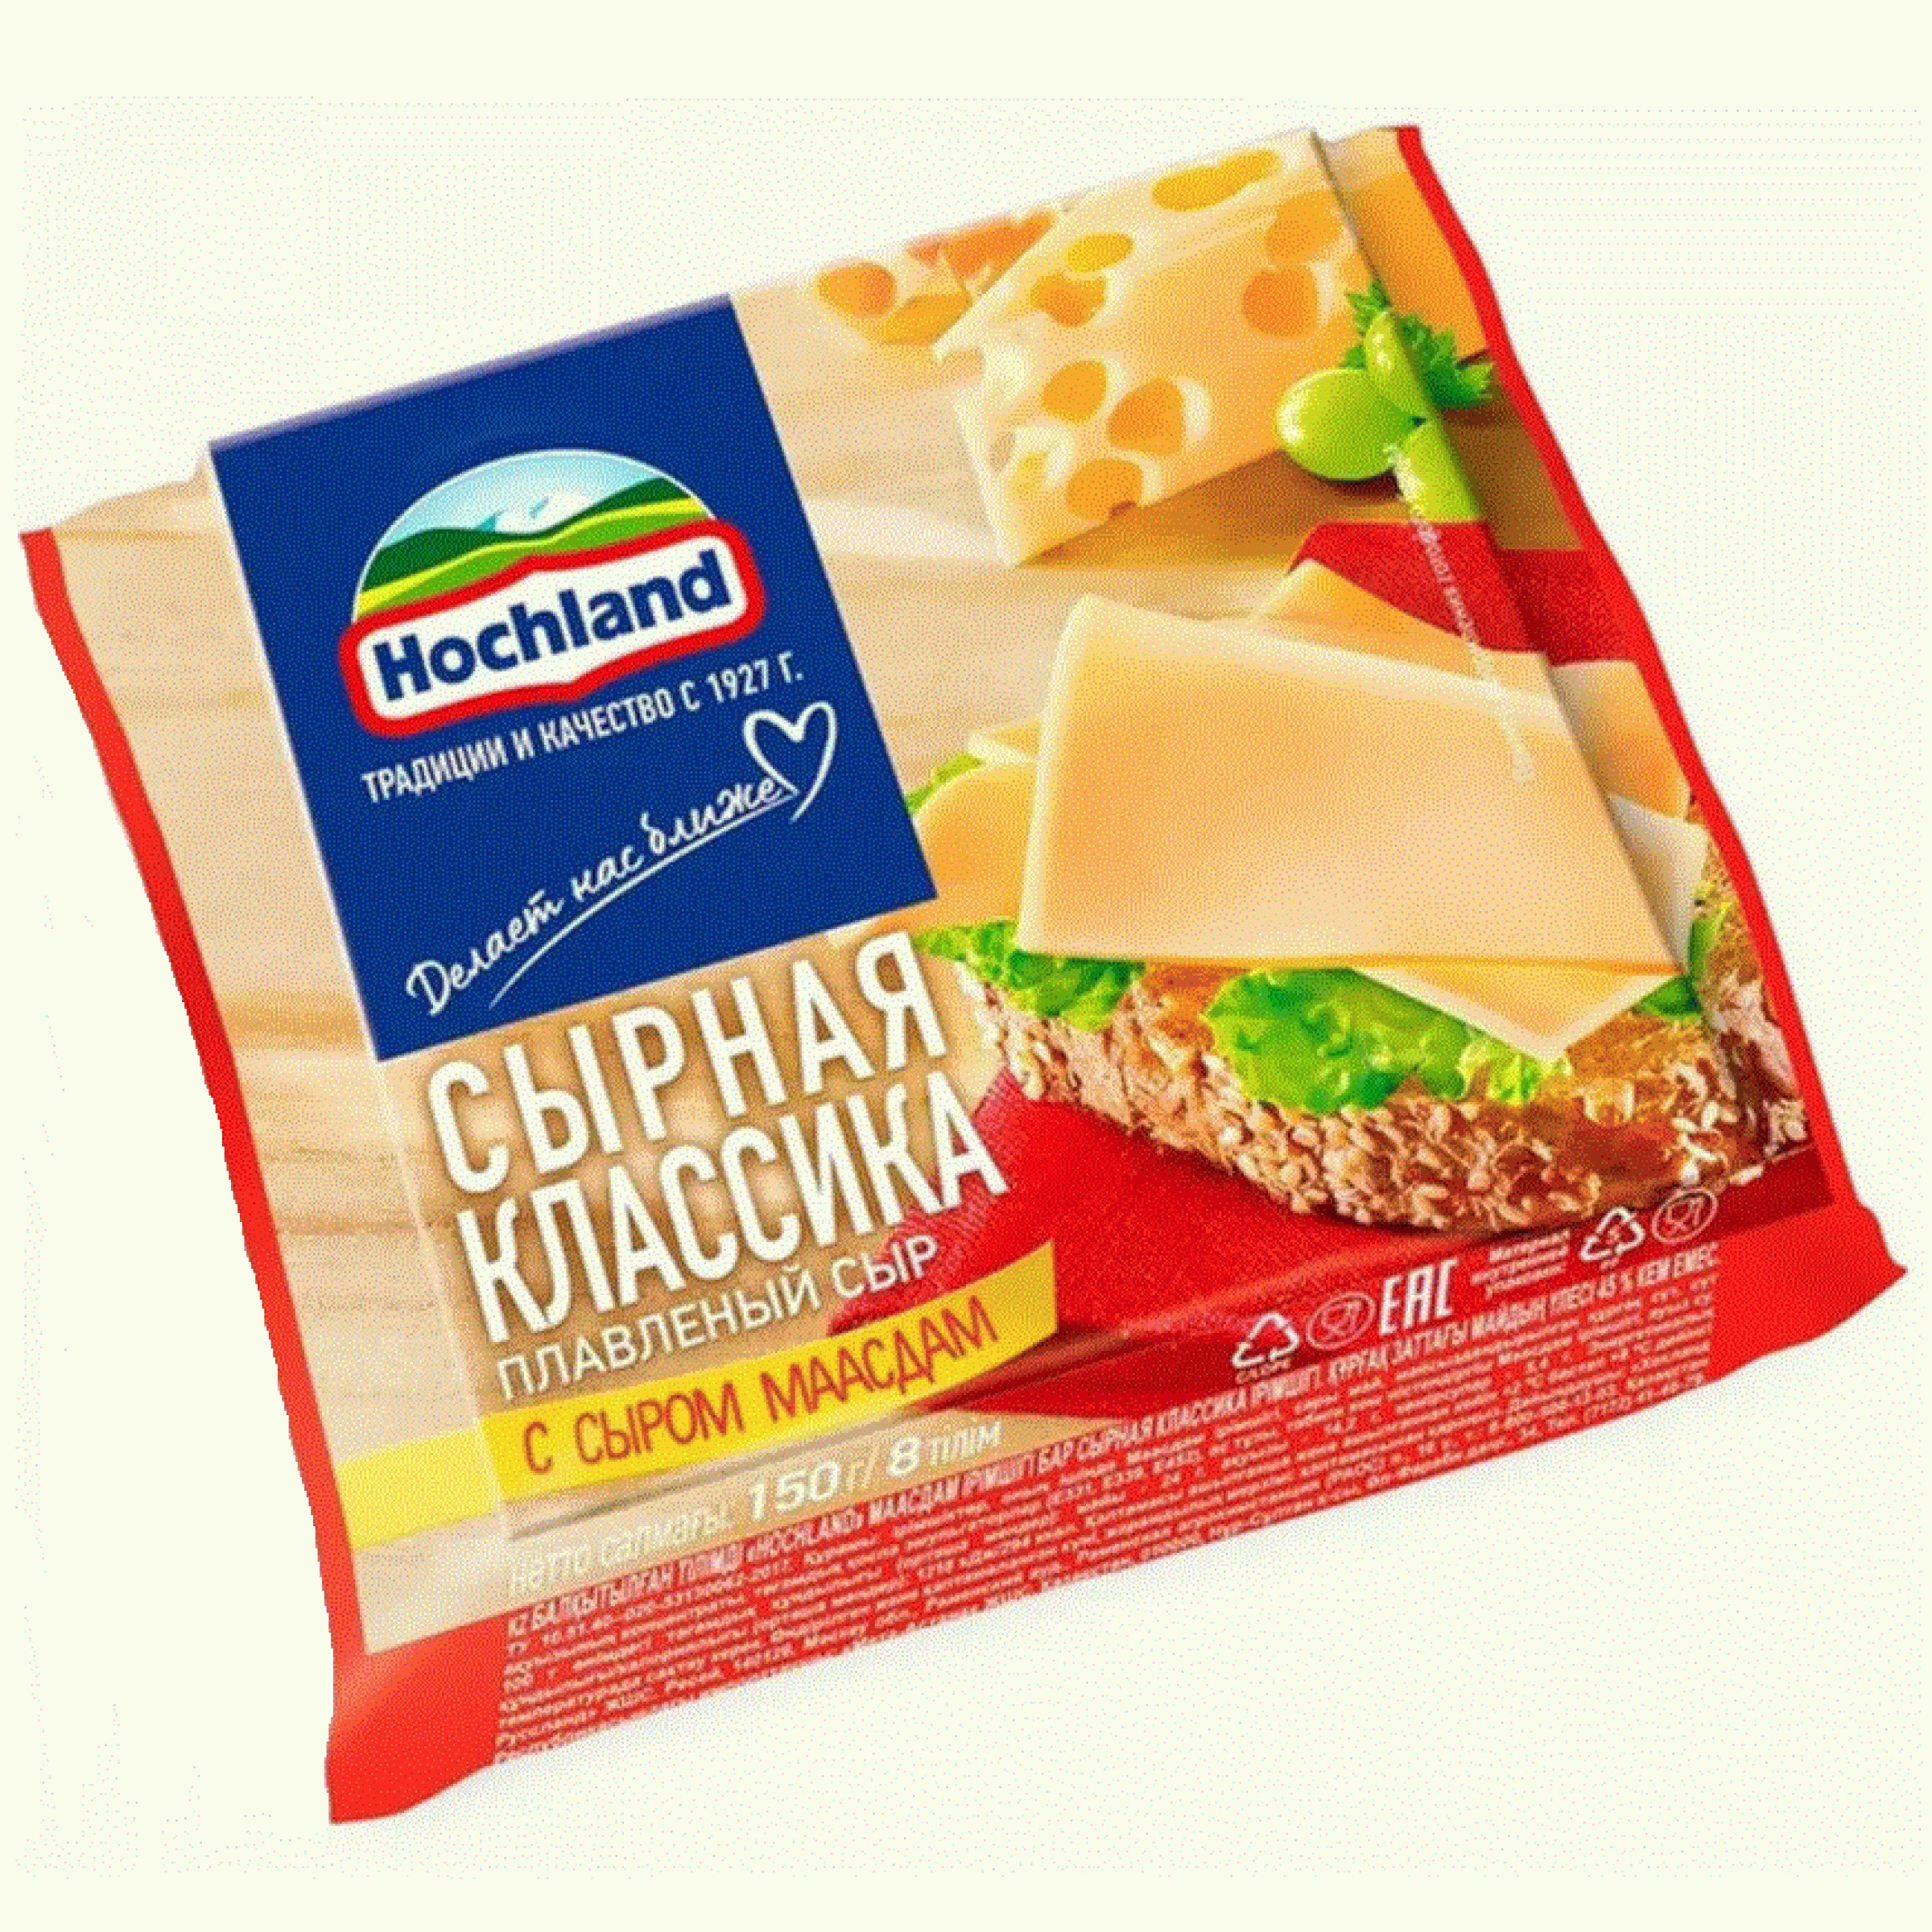 Сыр плавленый Маасдам ломтики Hochland 45%, 150 г